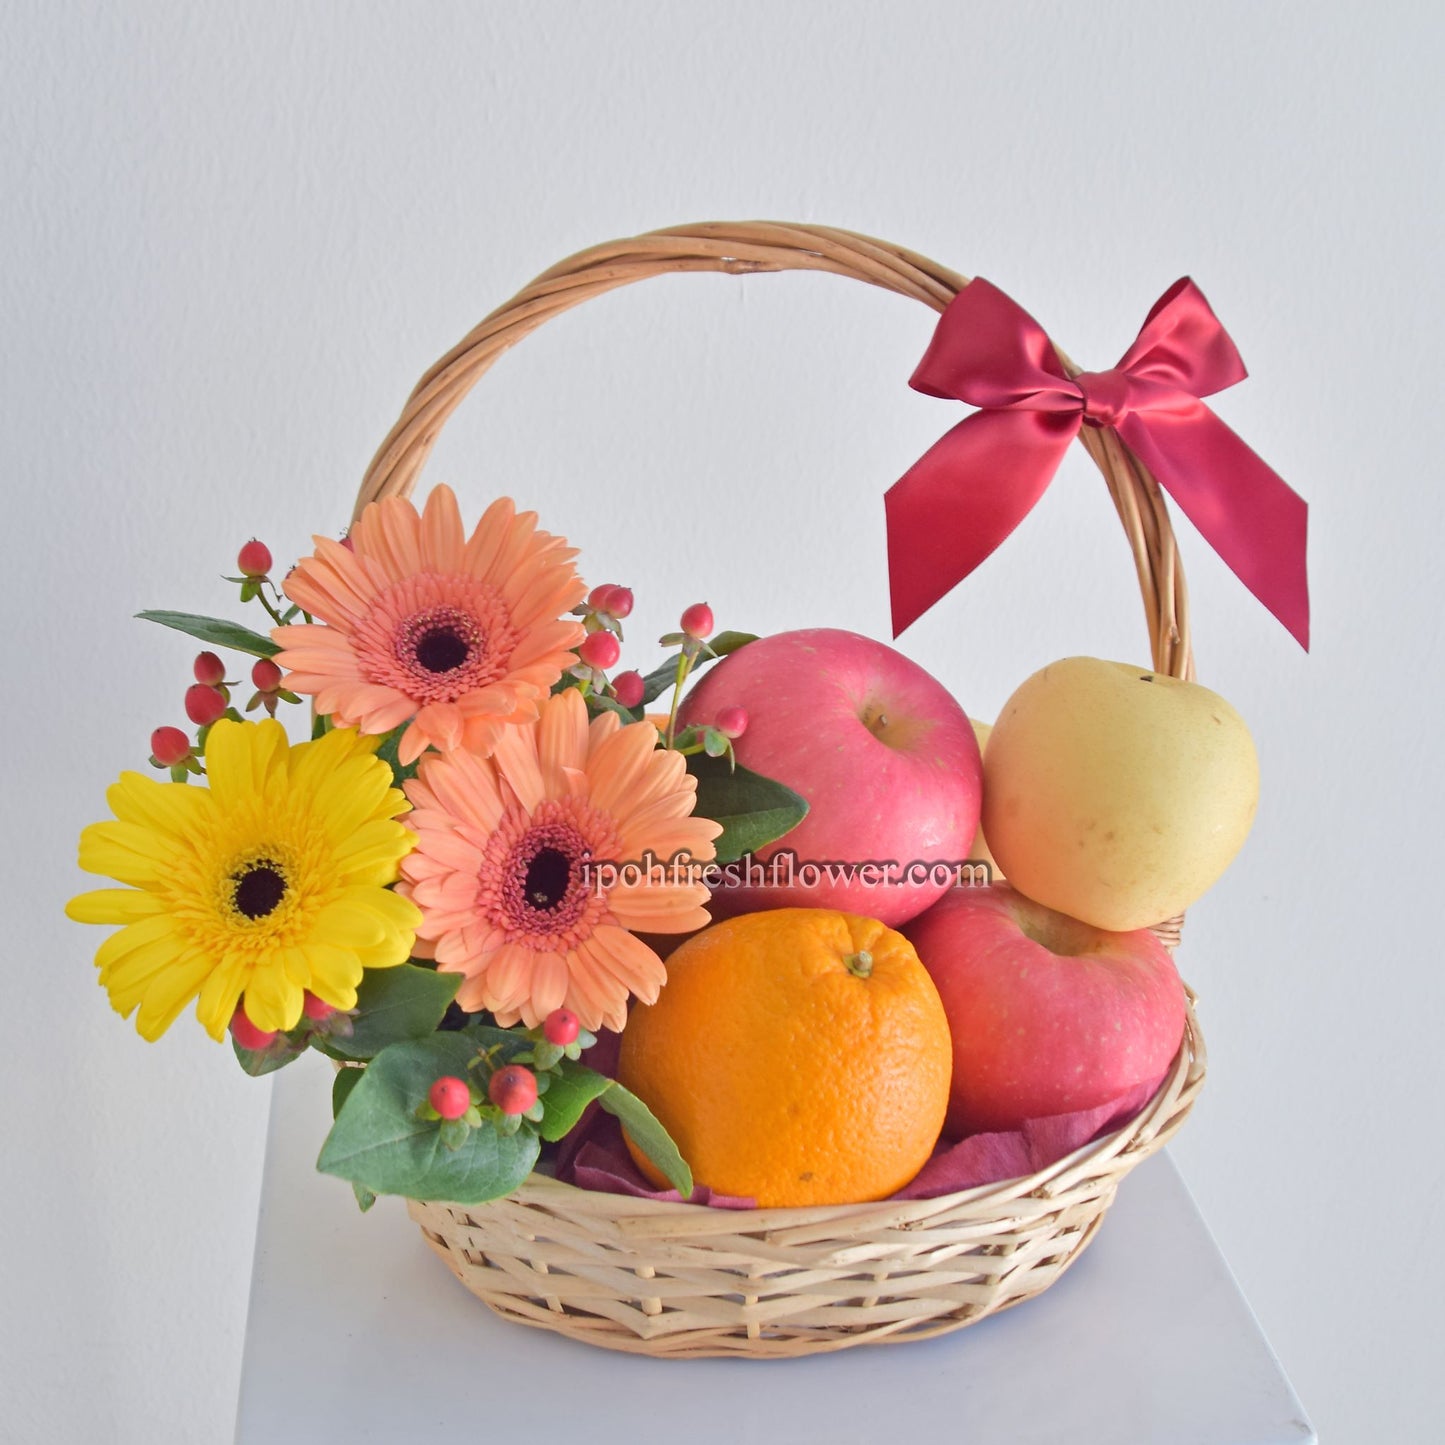 Fruits Greeting| Fruit Basket Delivery